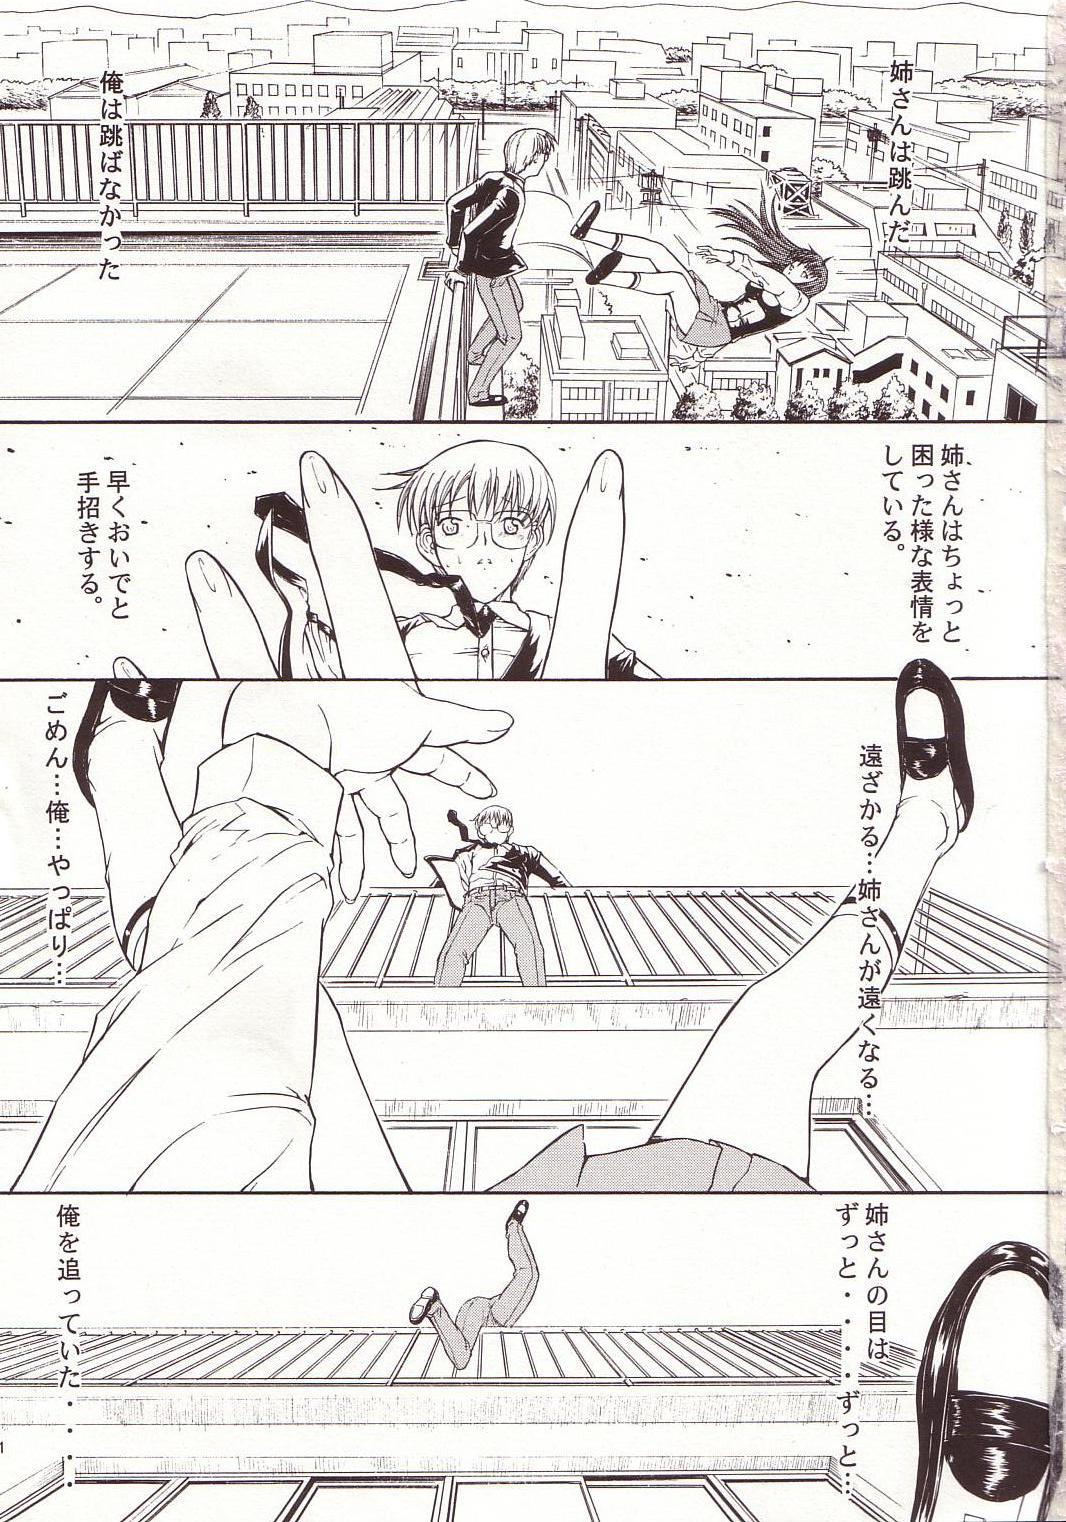 Hunks LOVELY 4 - Onegai teacher Stockings - Page 2